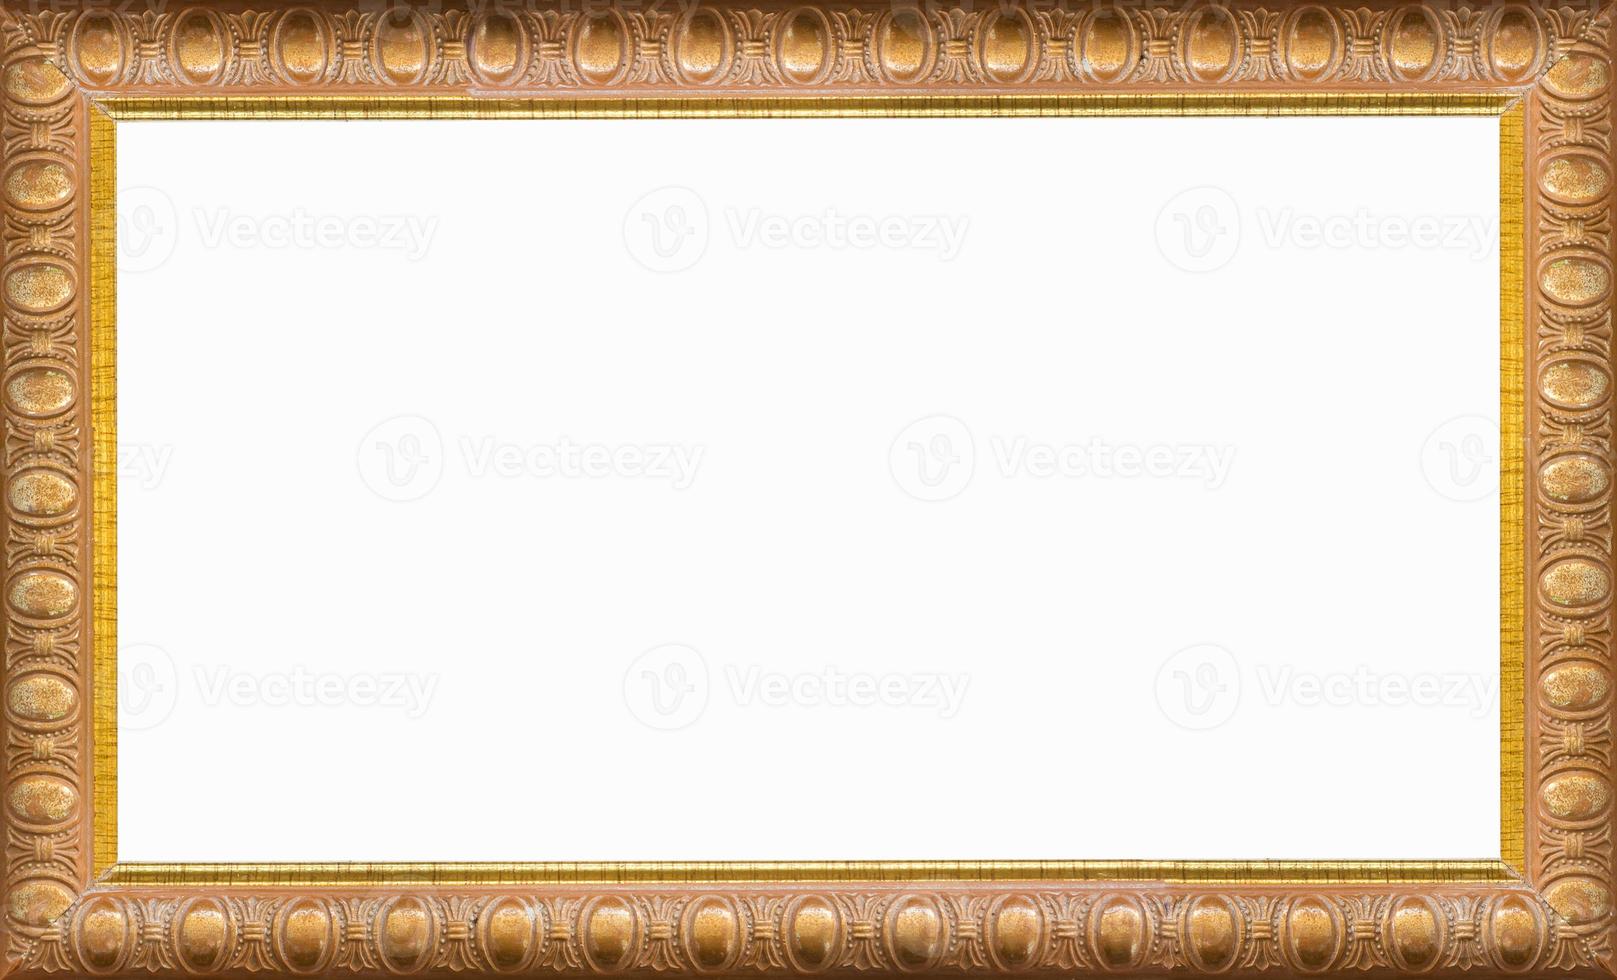 gouden afbeeldingsframe geïsoleerd op een witte achtergrond foto